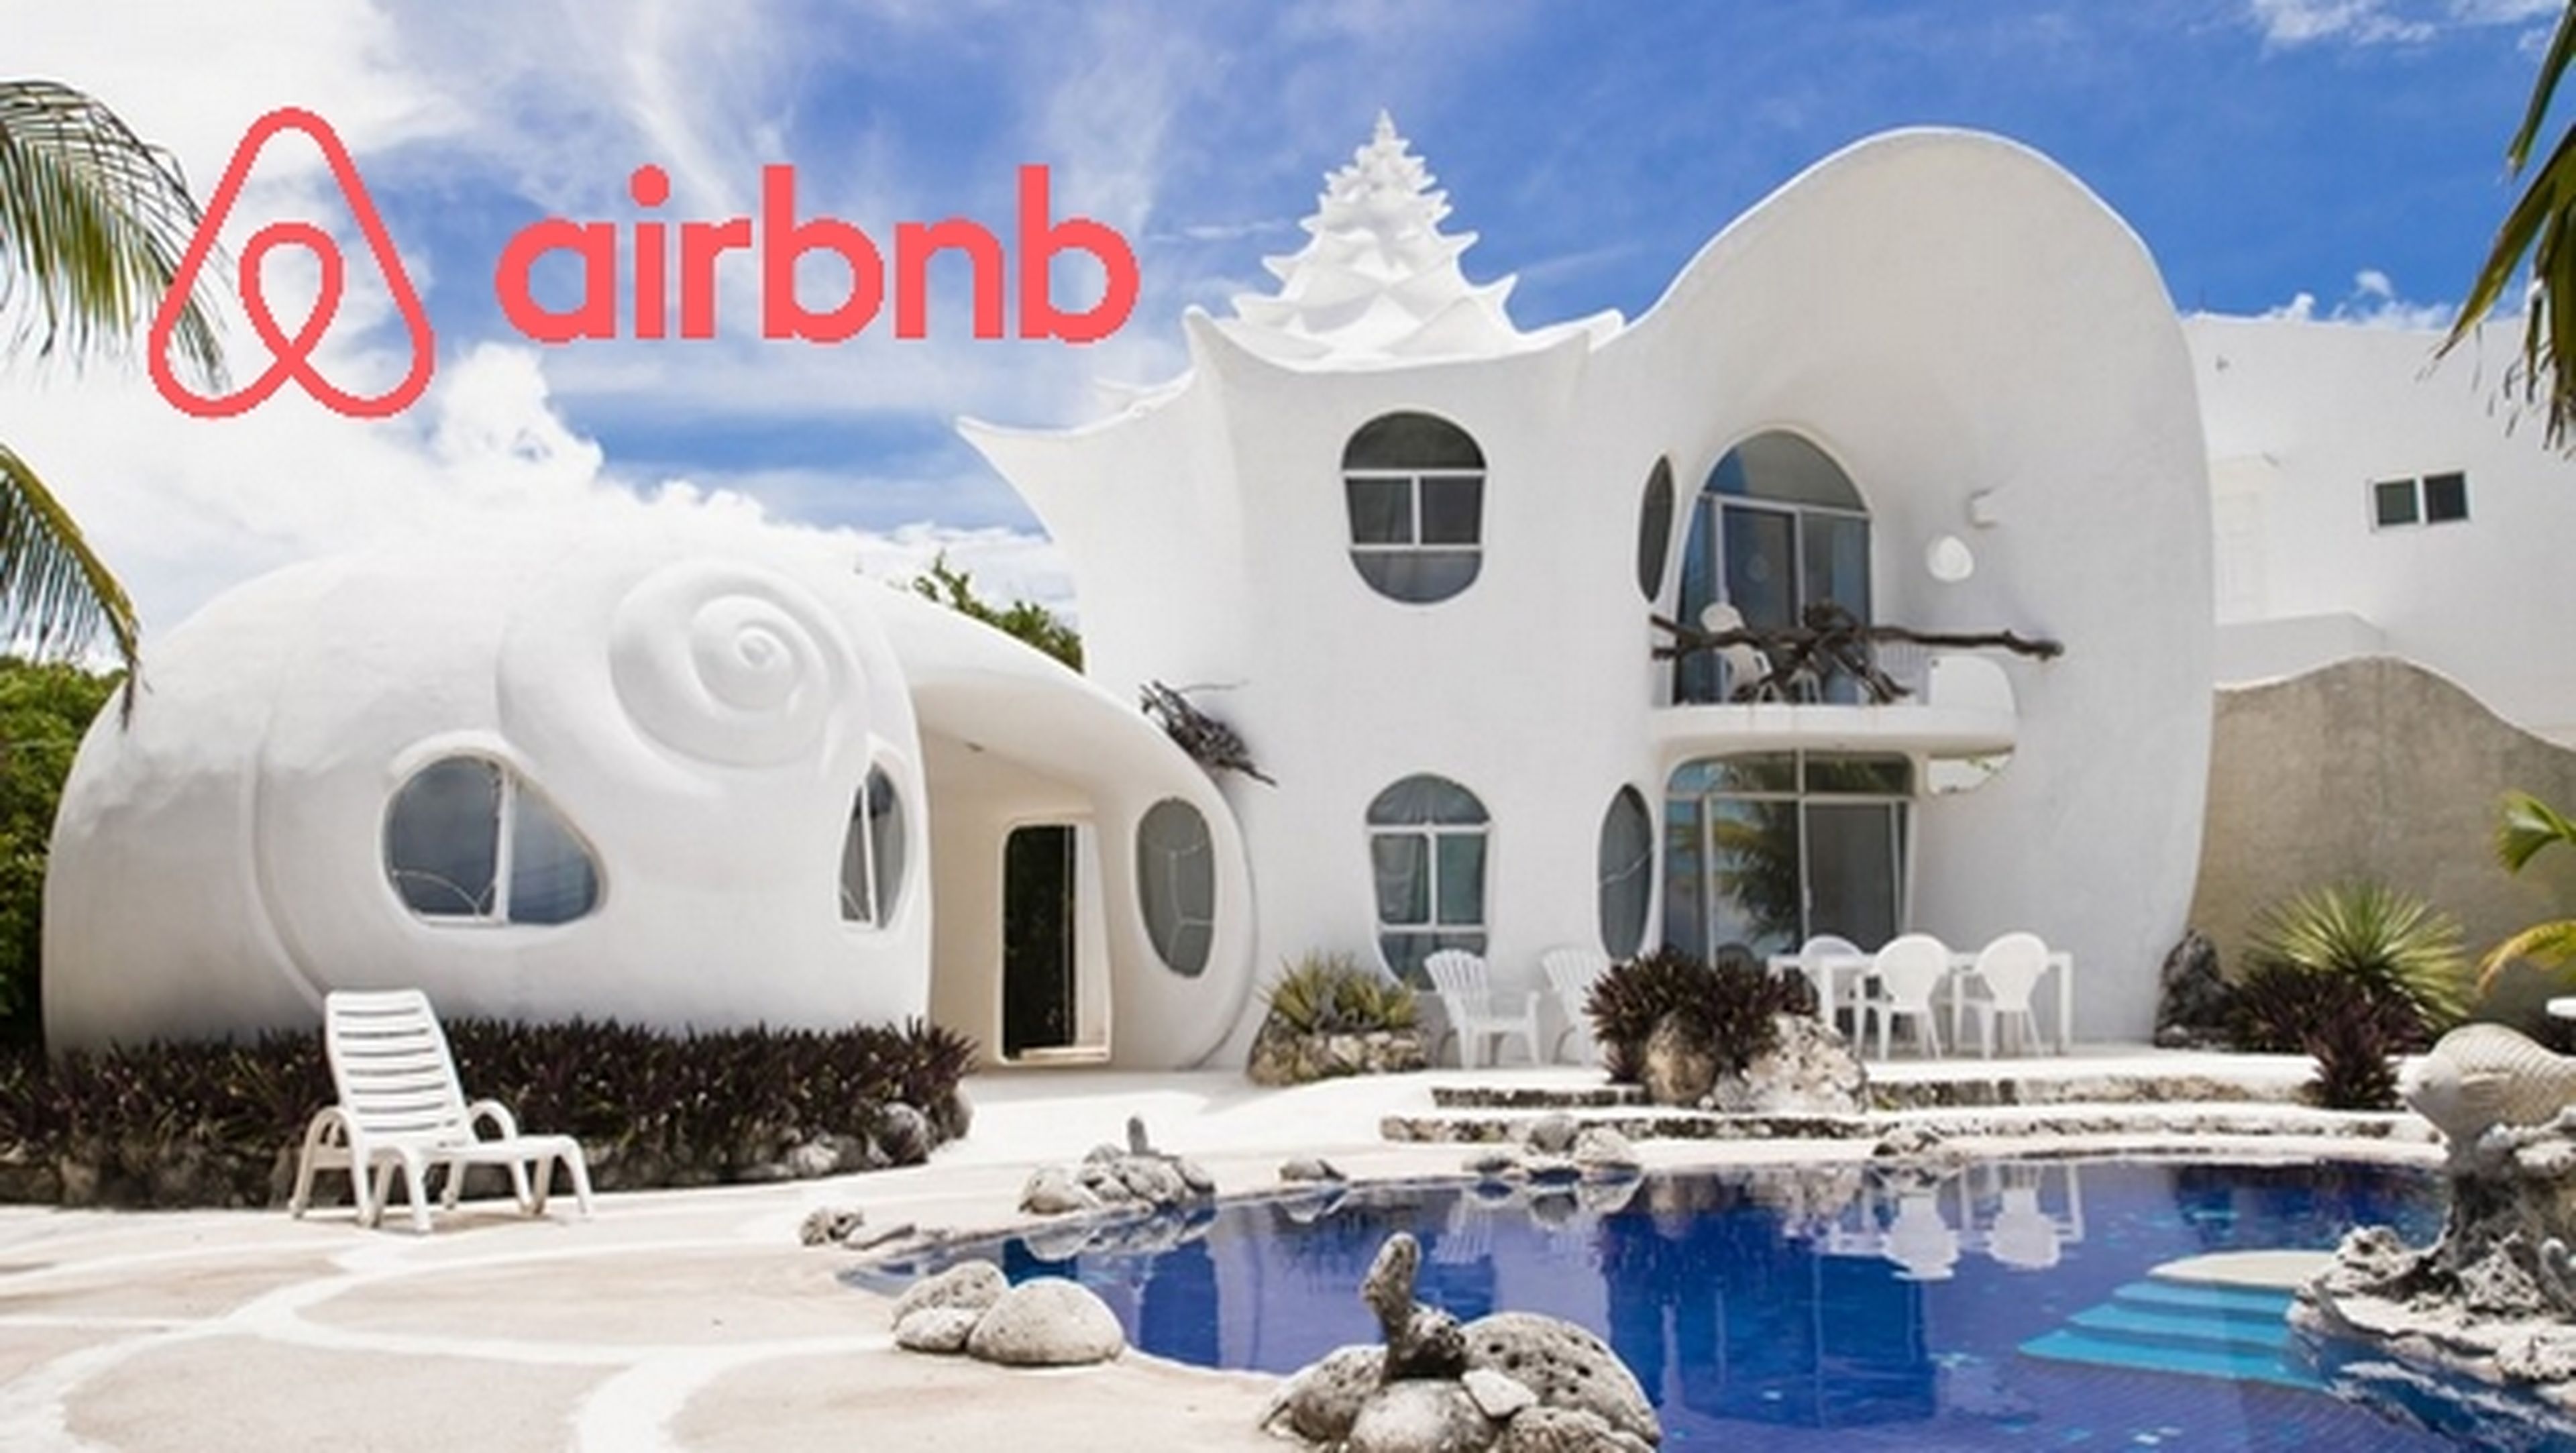 Airbnb, vacaciones baratas en casas y apartamentos privados.